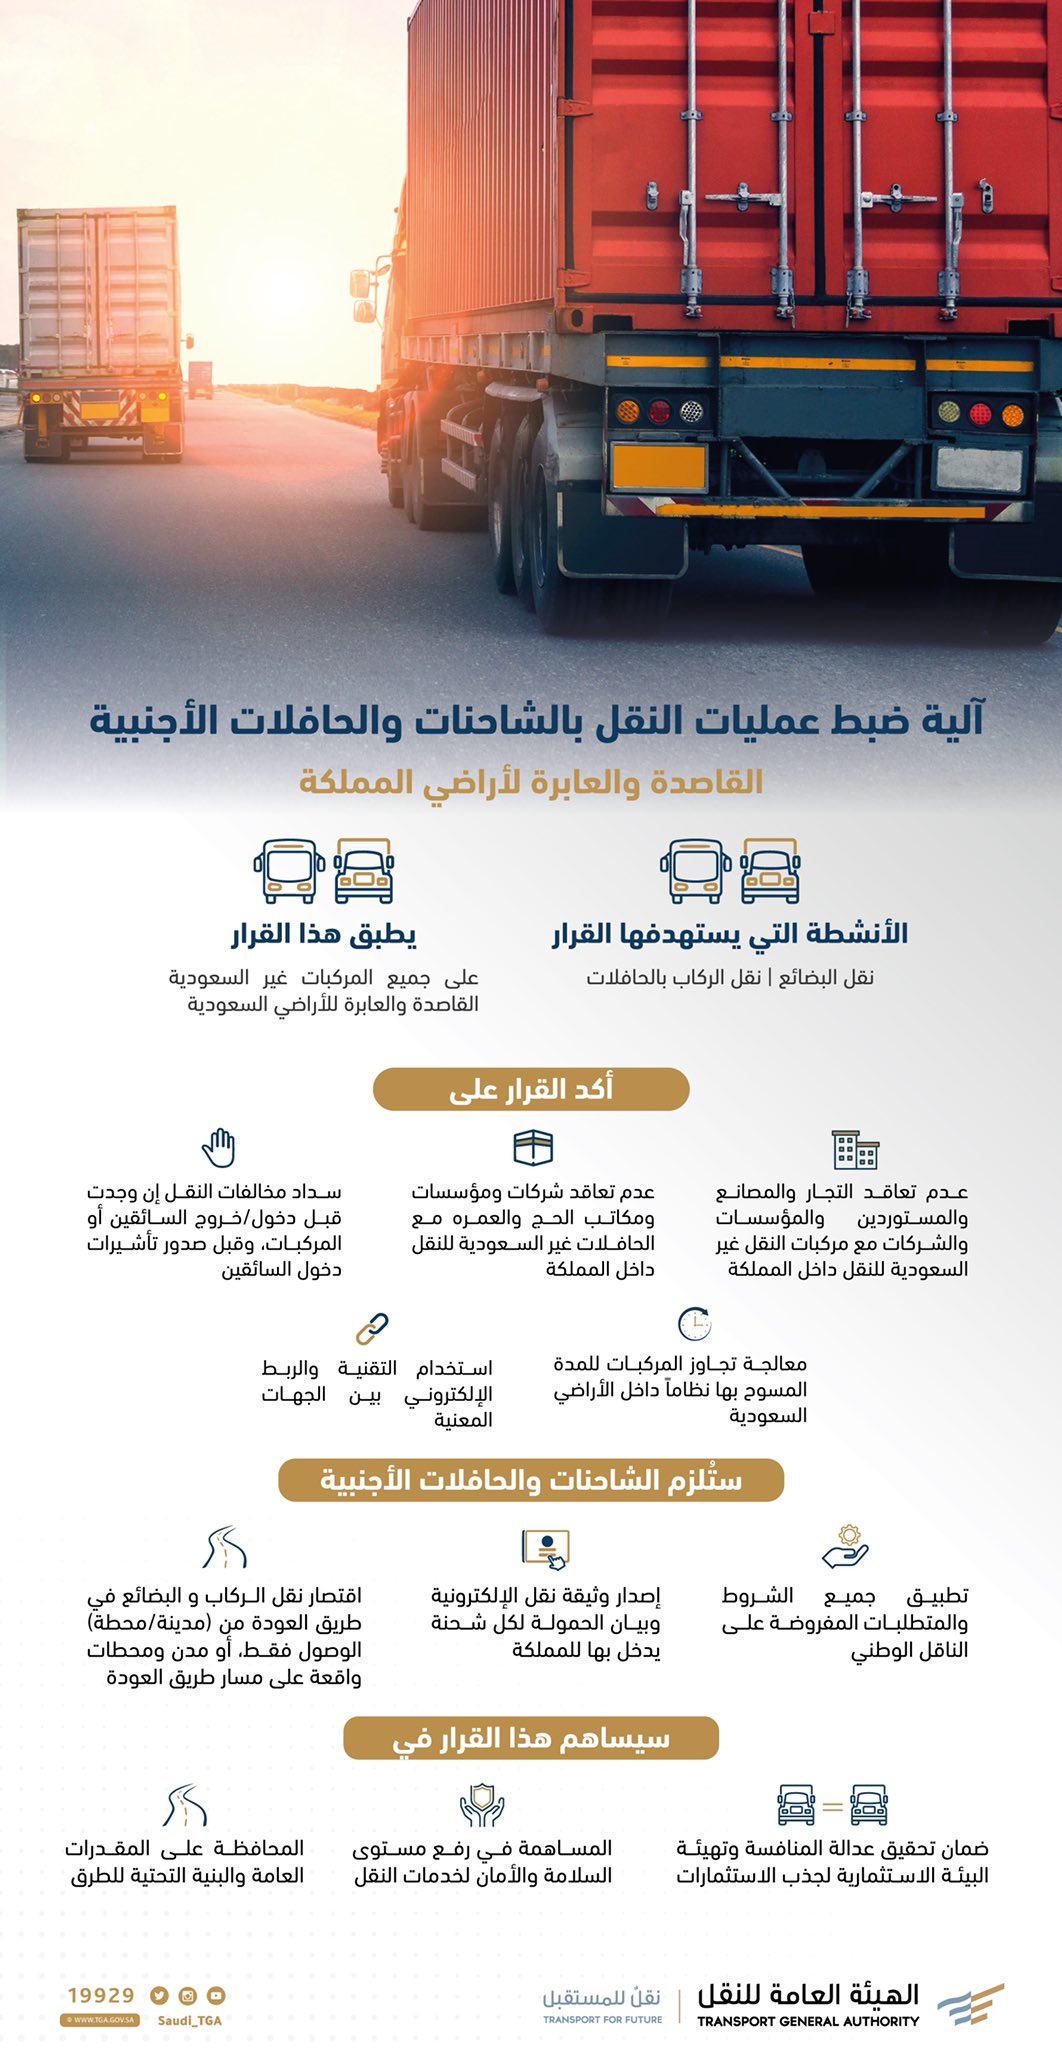 الهيئة العامة للنقل توضح آلية ضبط عمليات النقل بالشاحنات والحافلات الأجنبية القاصدة والعابرة لأراضي المملكة
